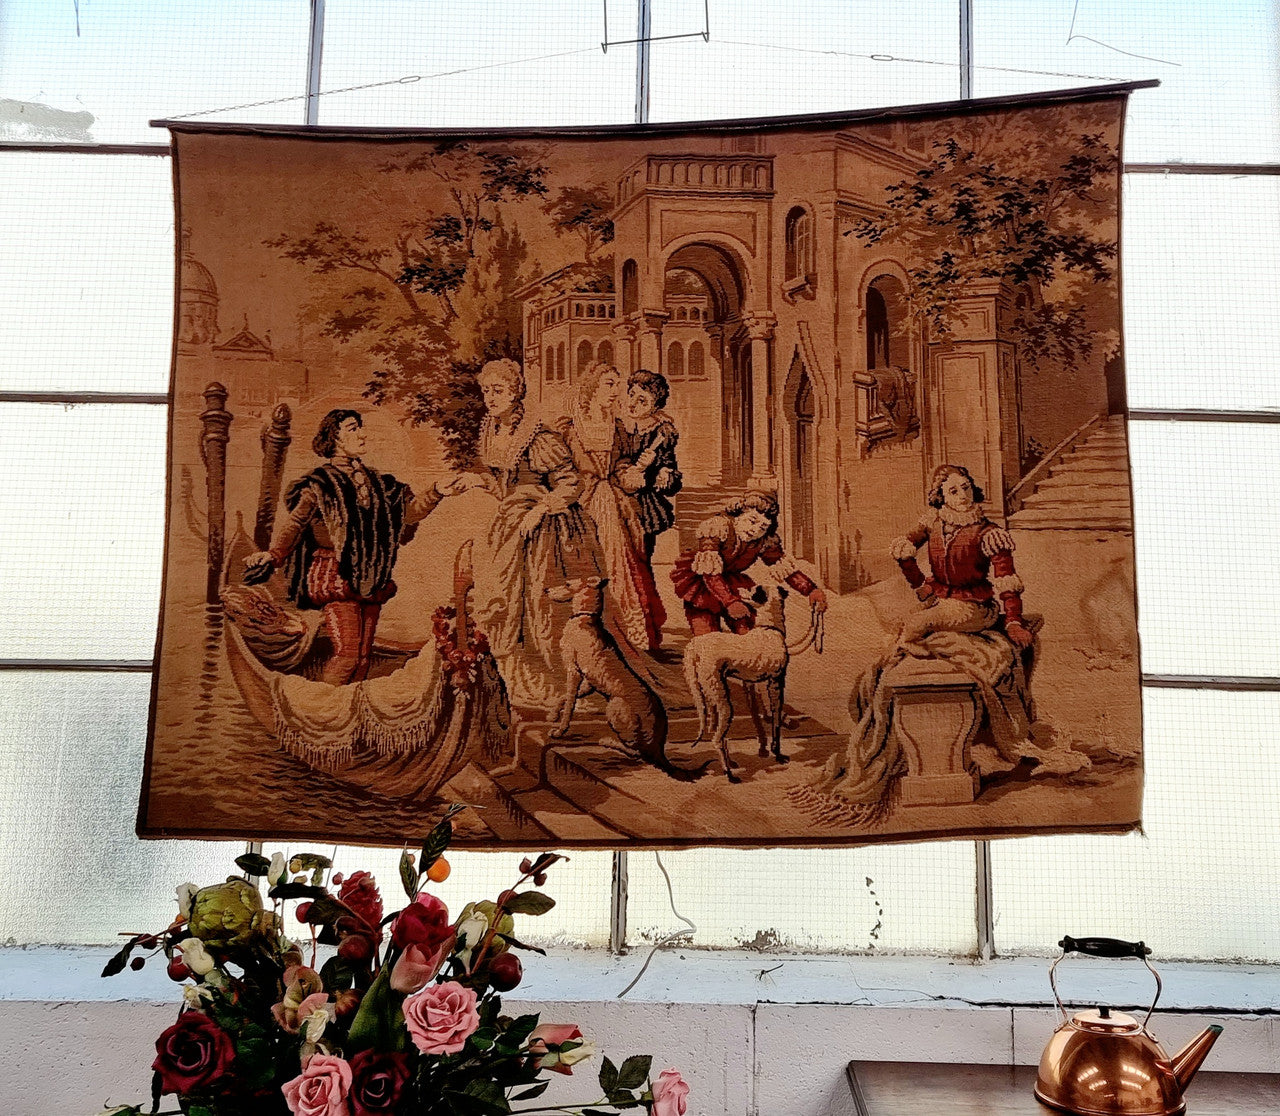 Large Antique Belgium Tapestry